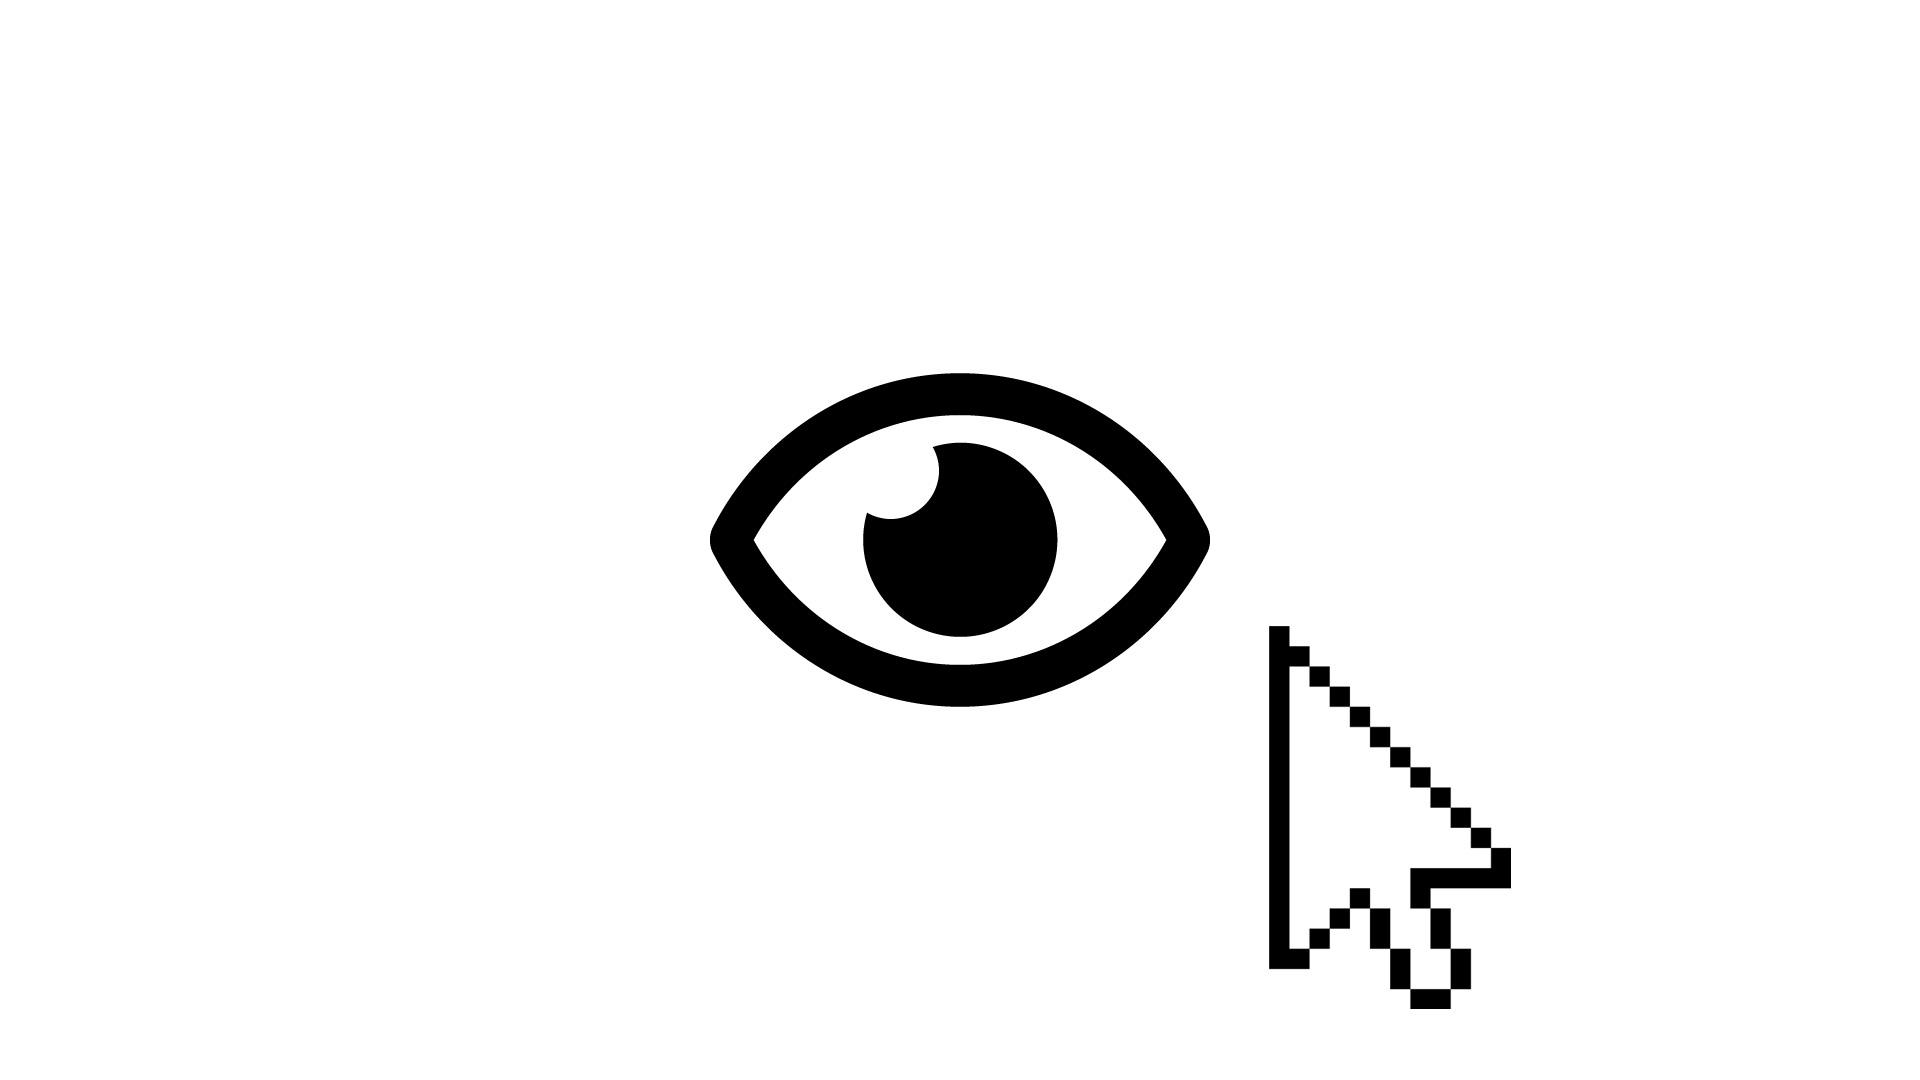 Barrierefreie Ansicht der Website: Icon "Auge" auswählen und Schriftgröße anpassen